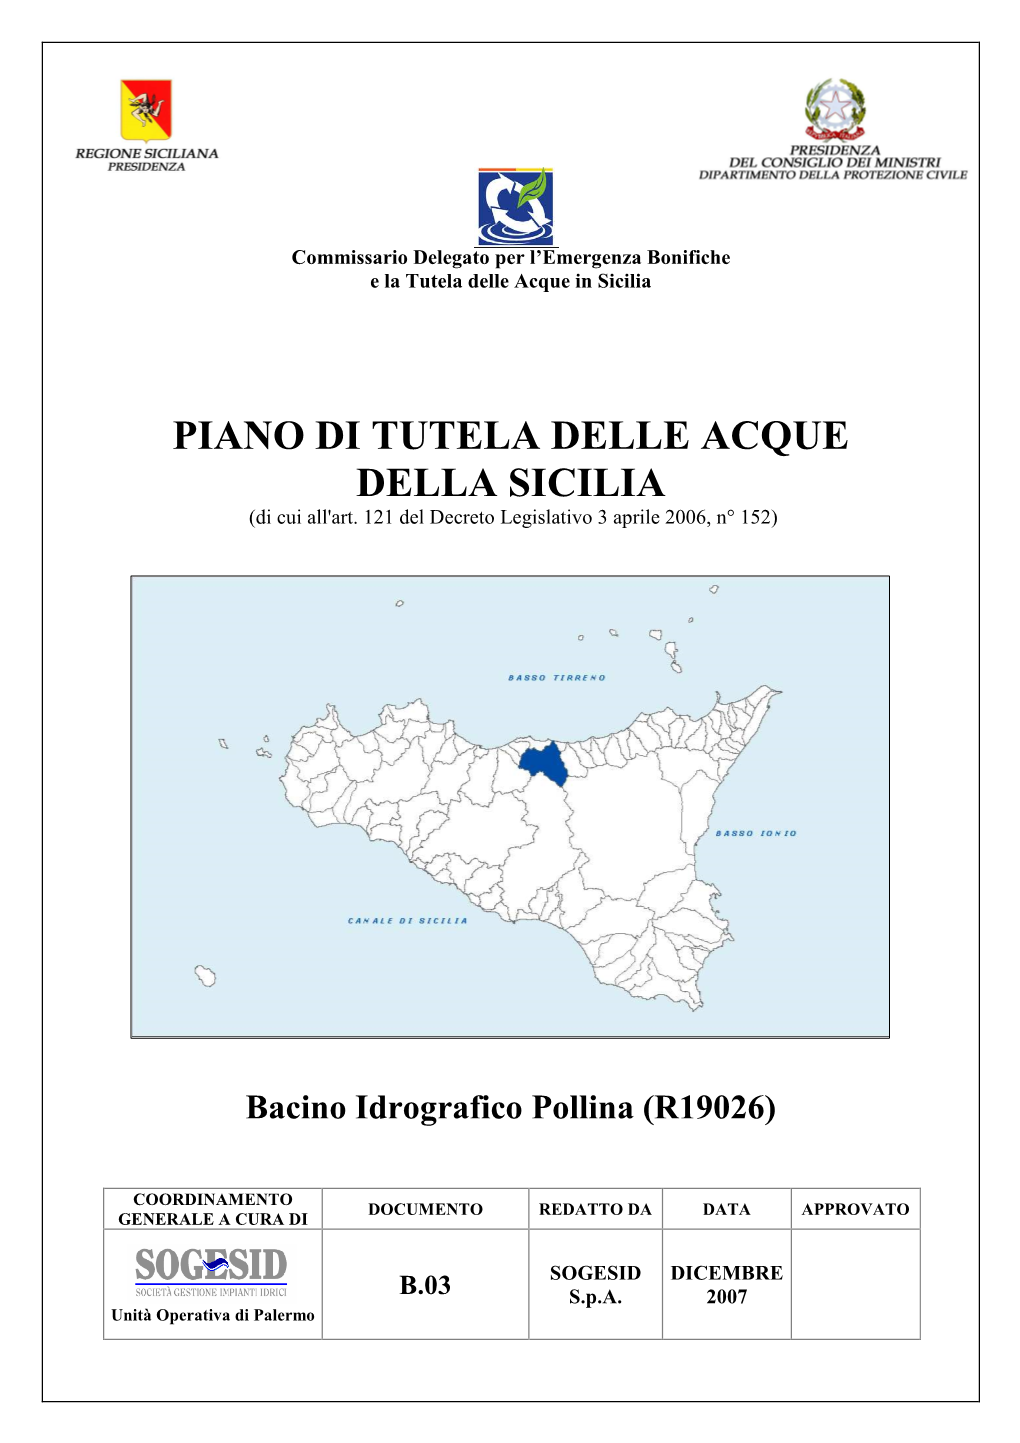 Bacino Idrografico Pollina (R19026)